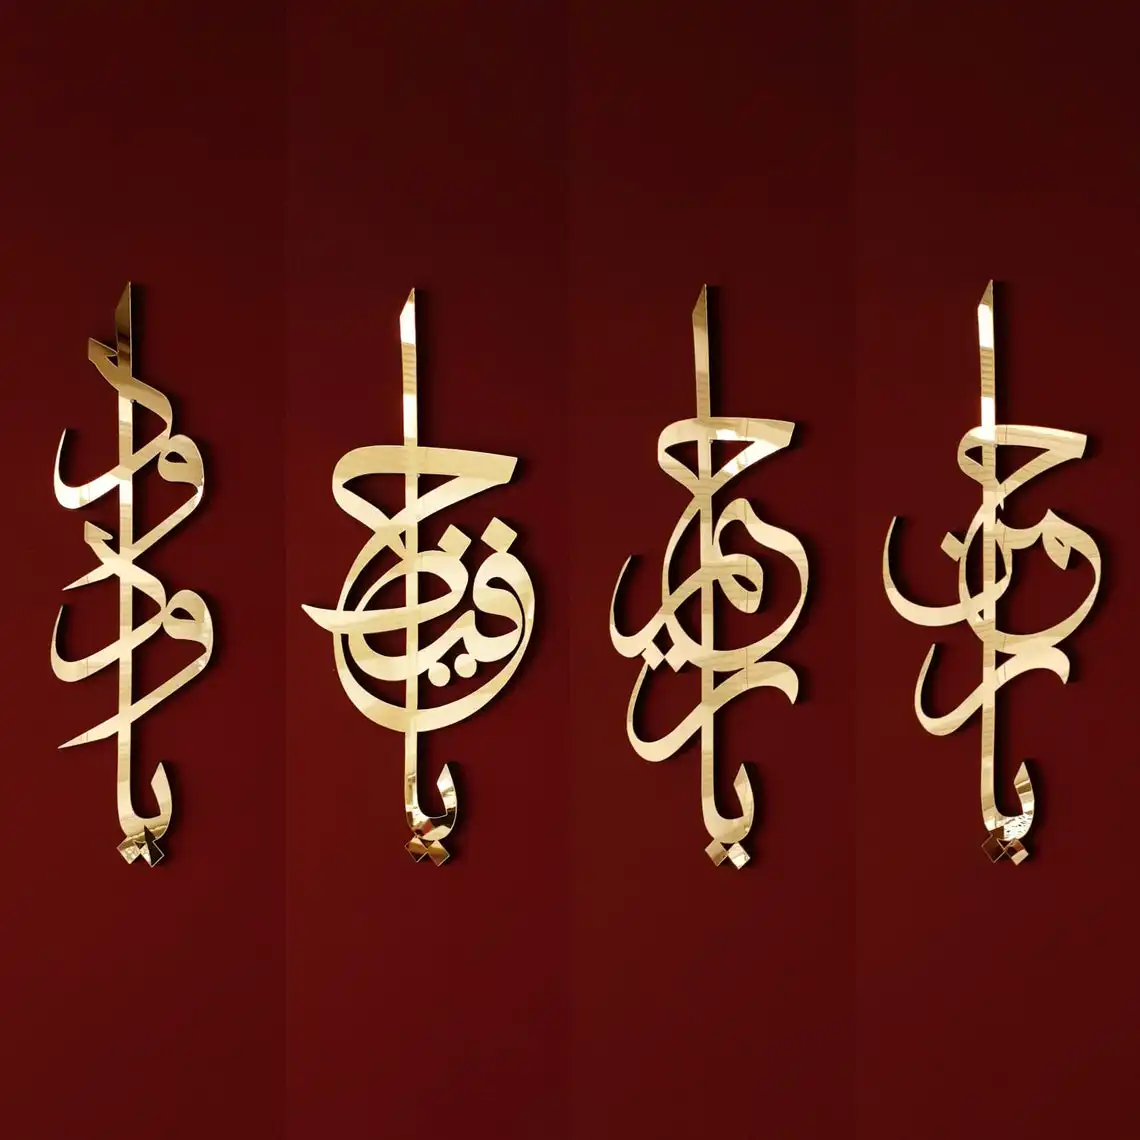 Caligrafía árabe acrílica/de madera para decoración de Ramadán, Eid, regalo, arte de pared islámica, nombres de Dios, Asmaul, Husna, decoración islámica para el hogar